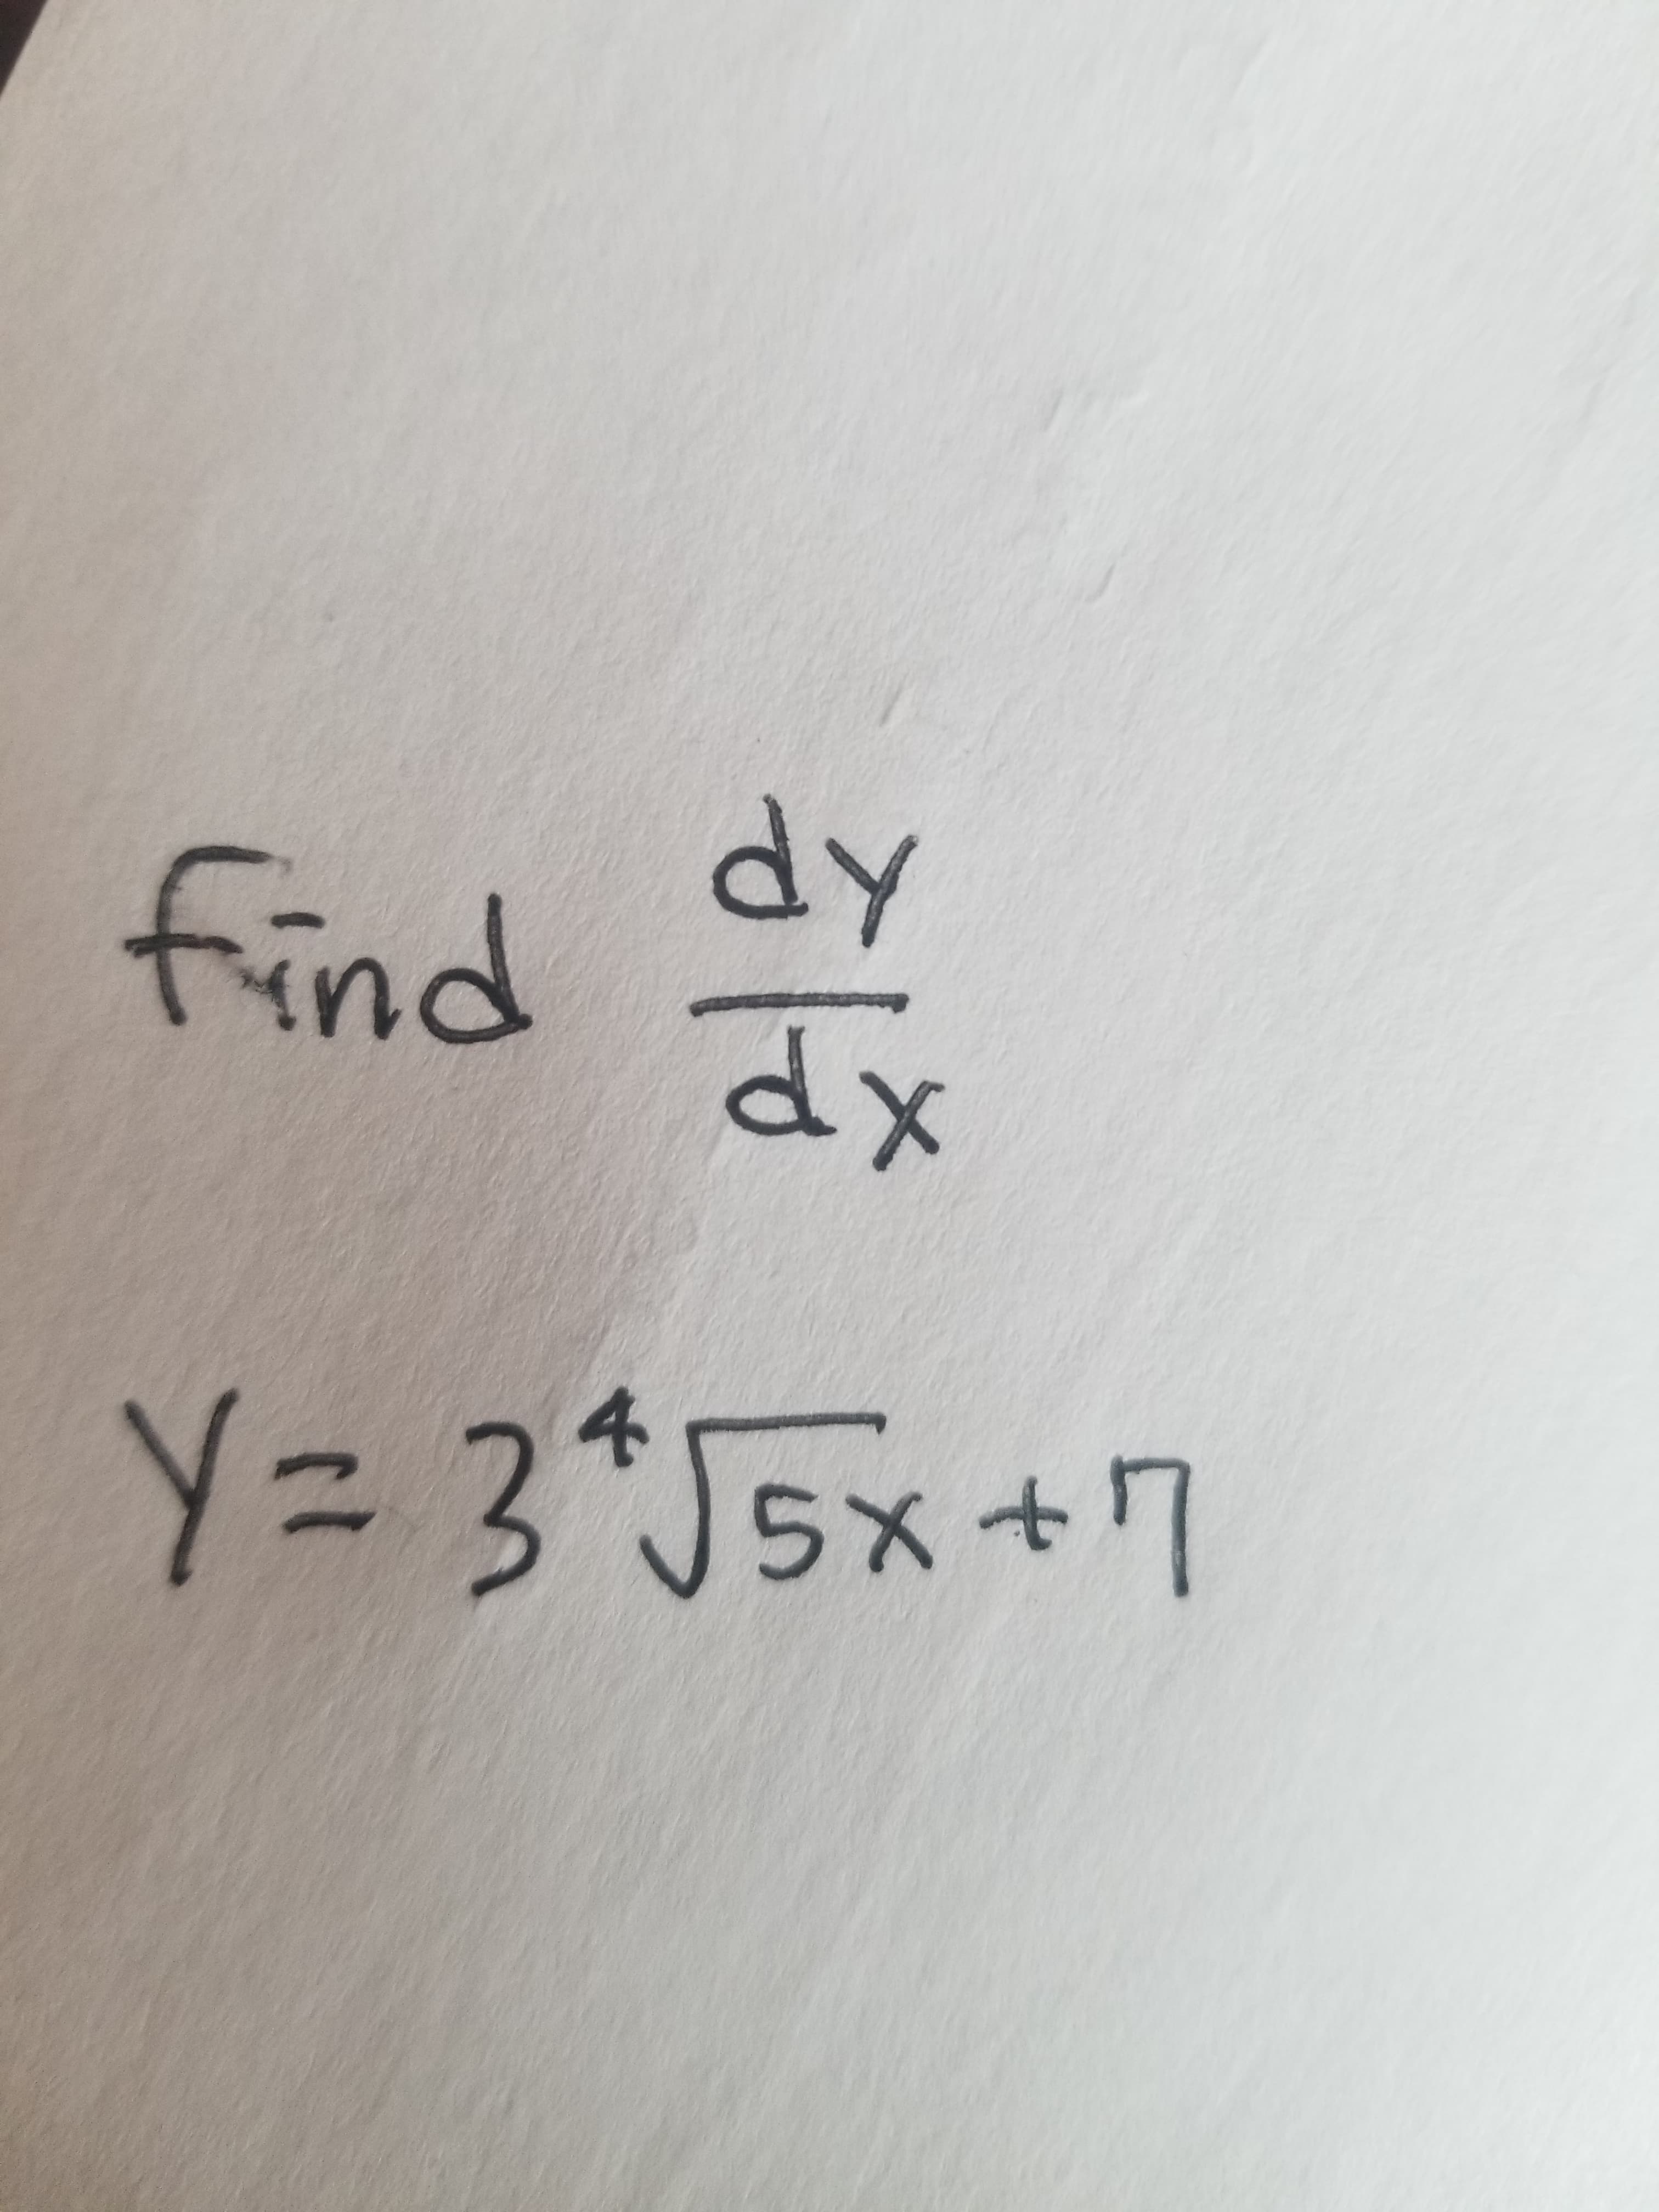 人p
dx
find
メP
4.
Y= 3*J5x+7
